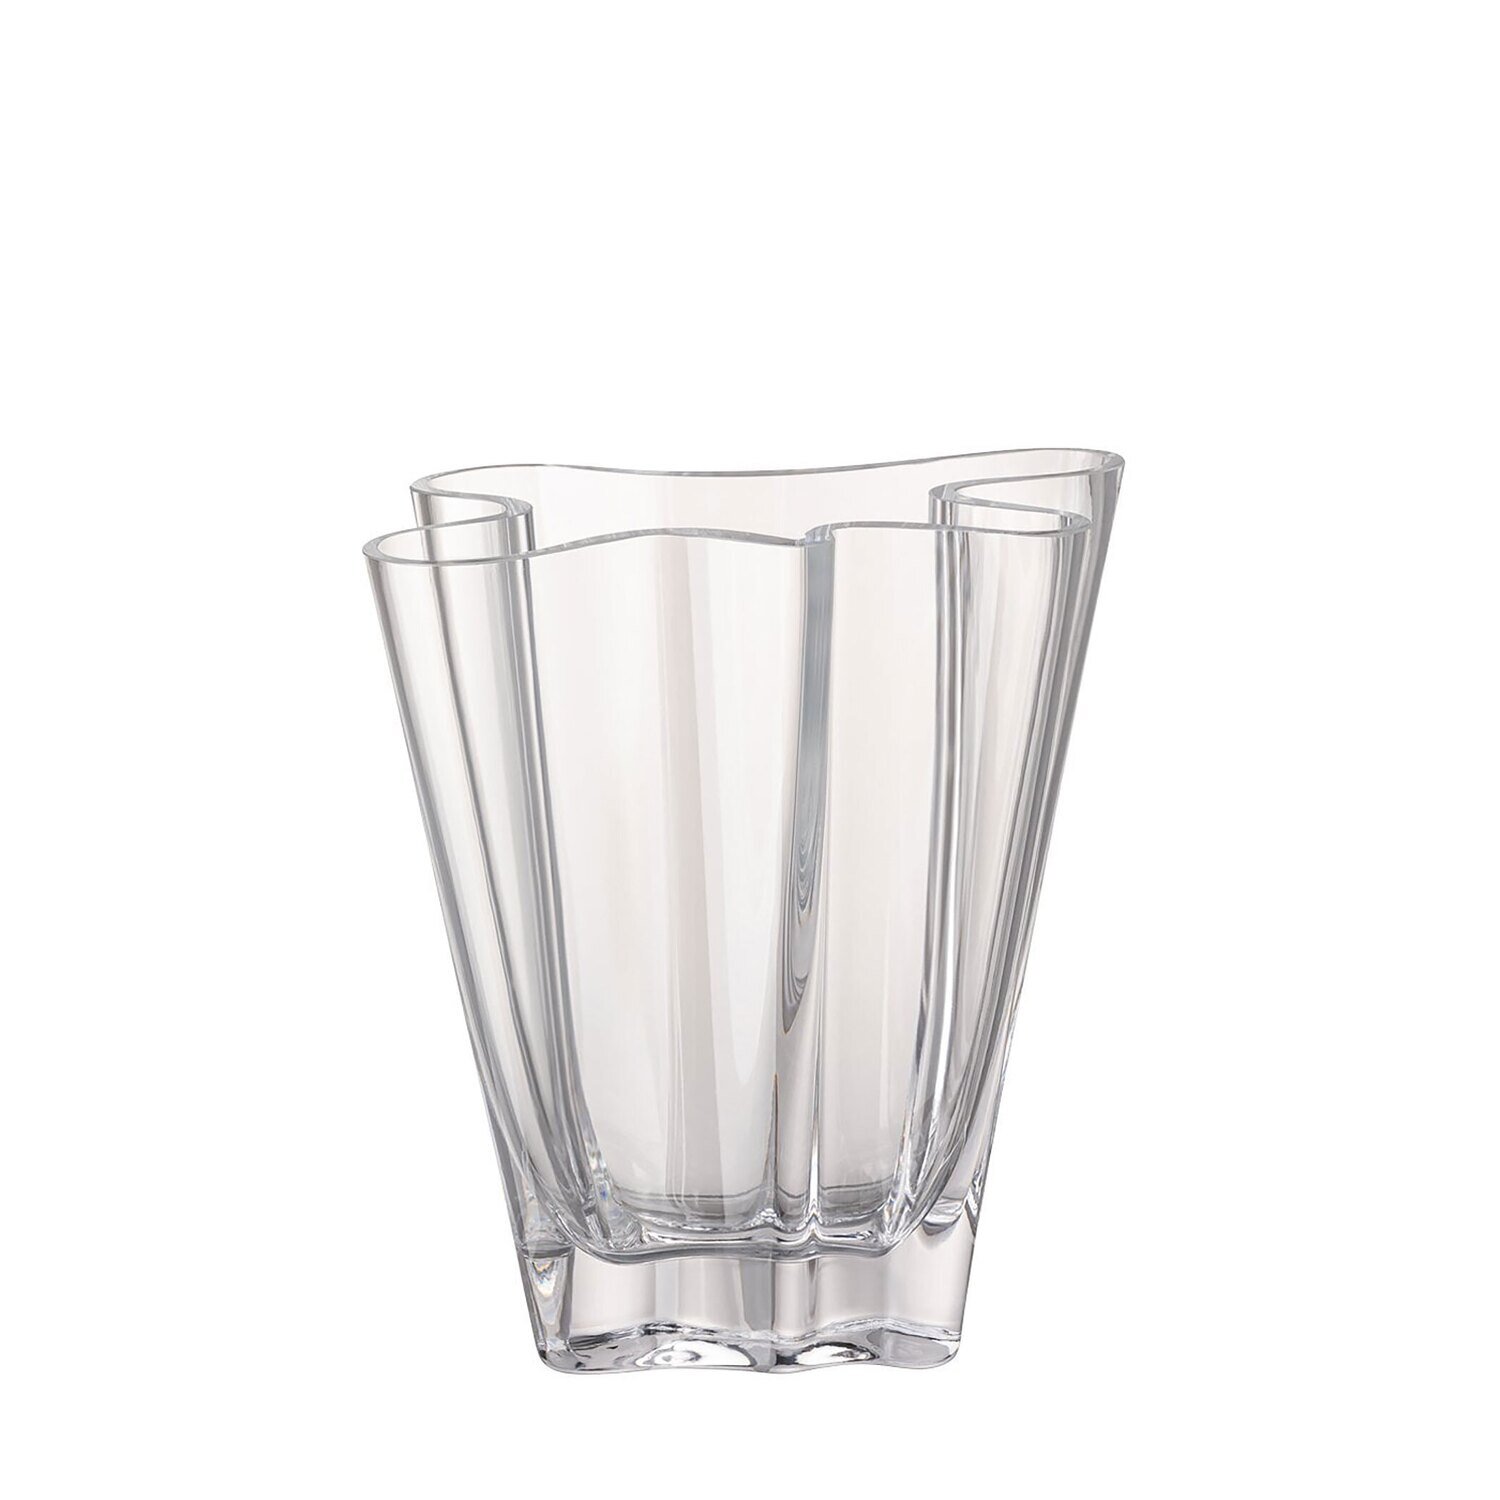 Rosenthal Flux Clear Crystal Vase 8 Inch